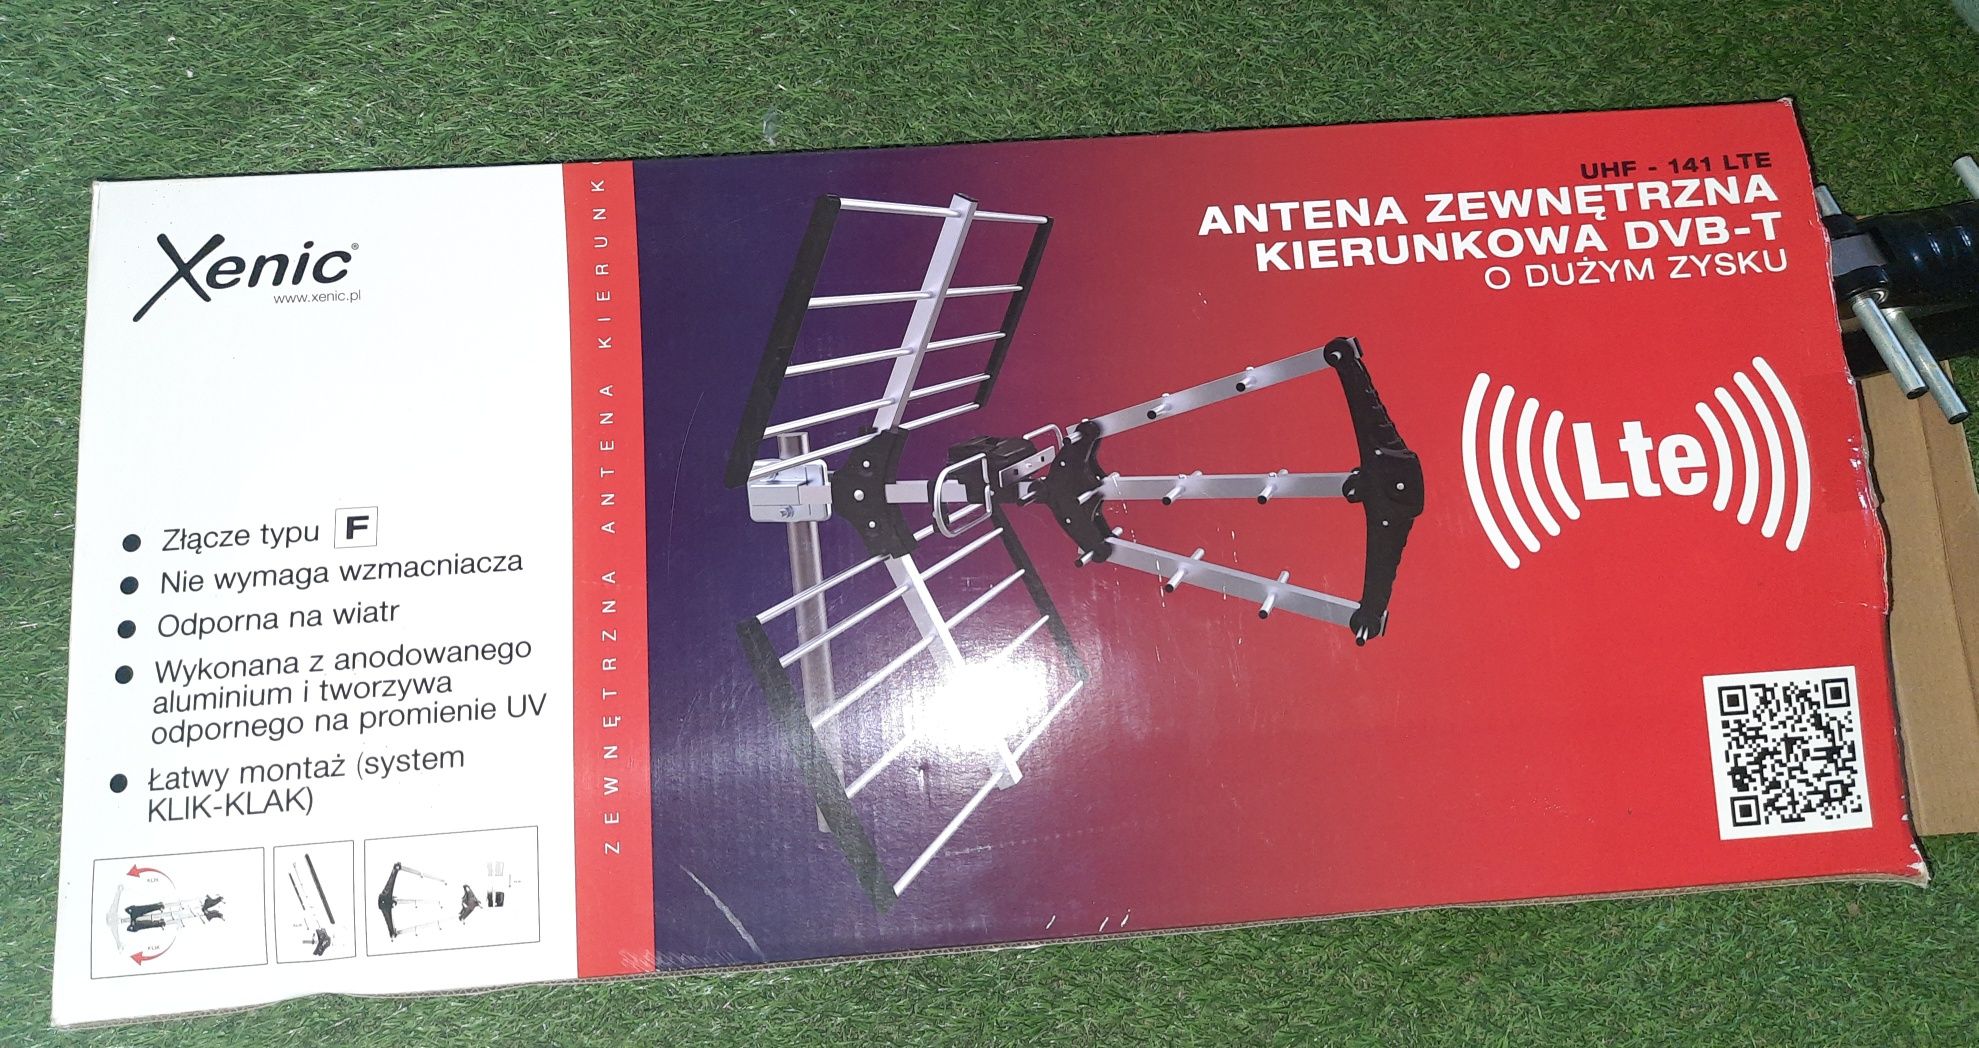 Antena zewnętrzna kierunkowa DVB-T Xenic UHF-141 5G/LTE
nr kat. 127101